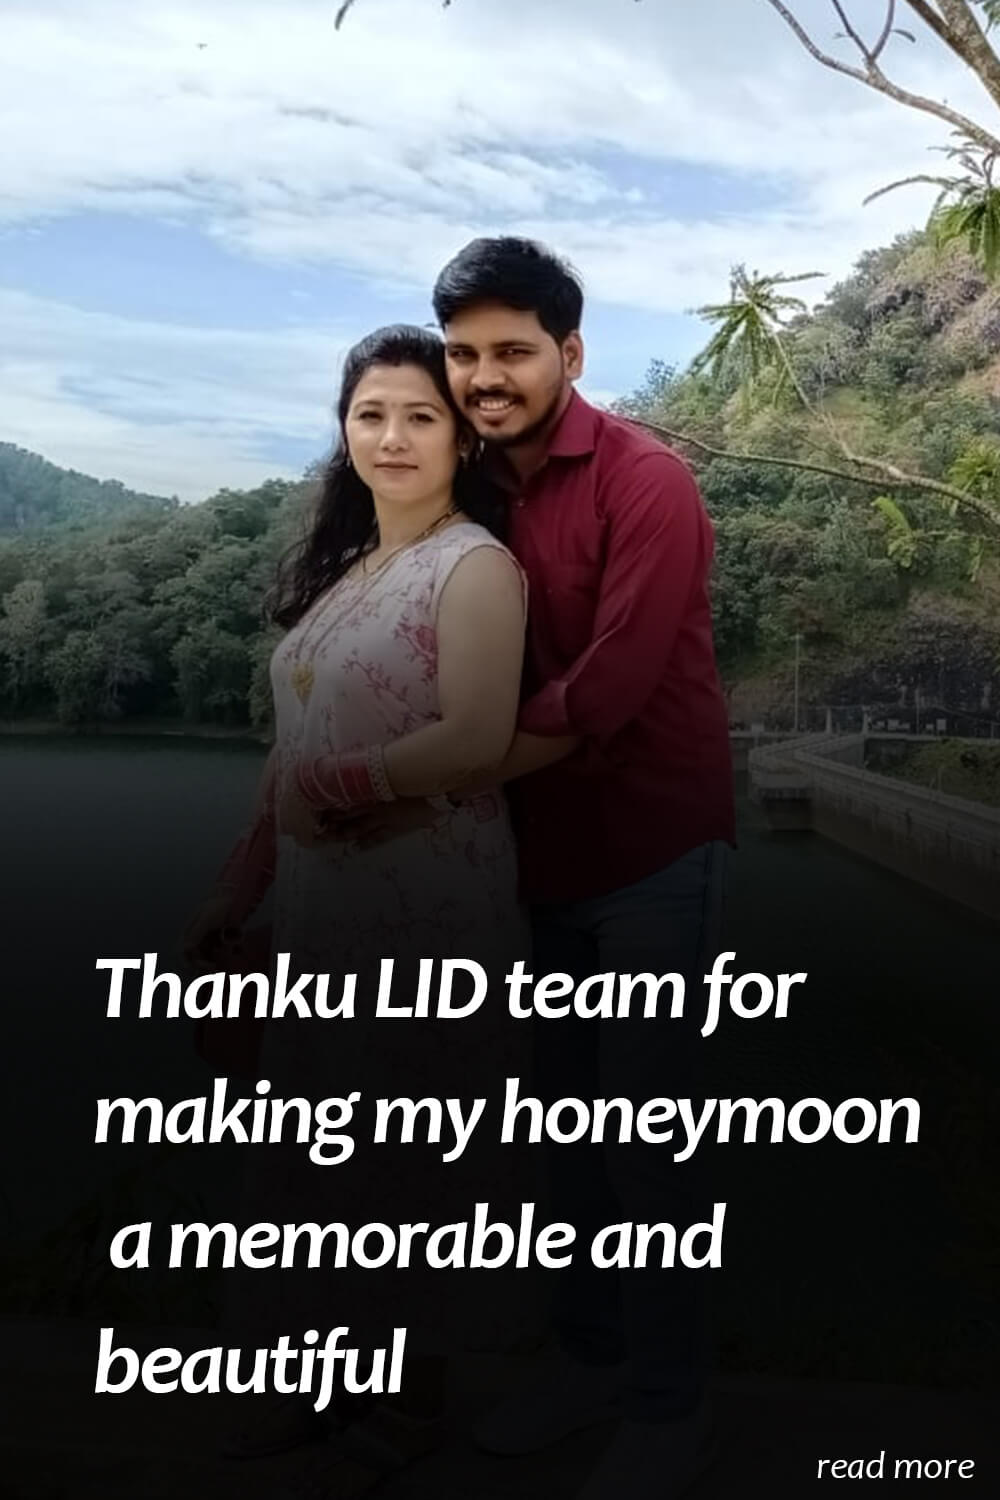 kerala honeymoon packages review